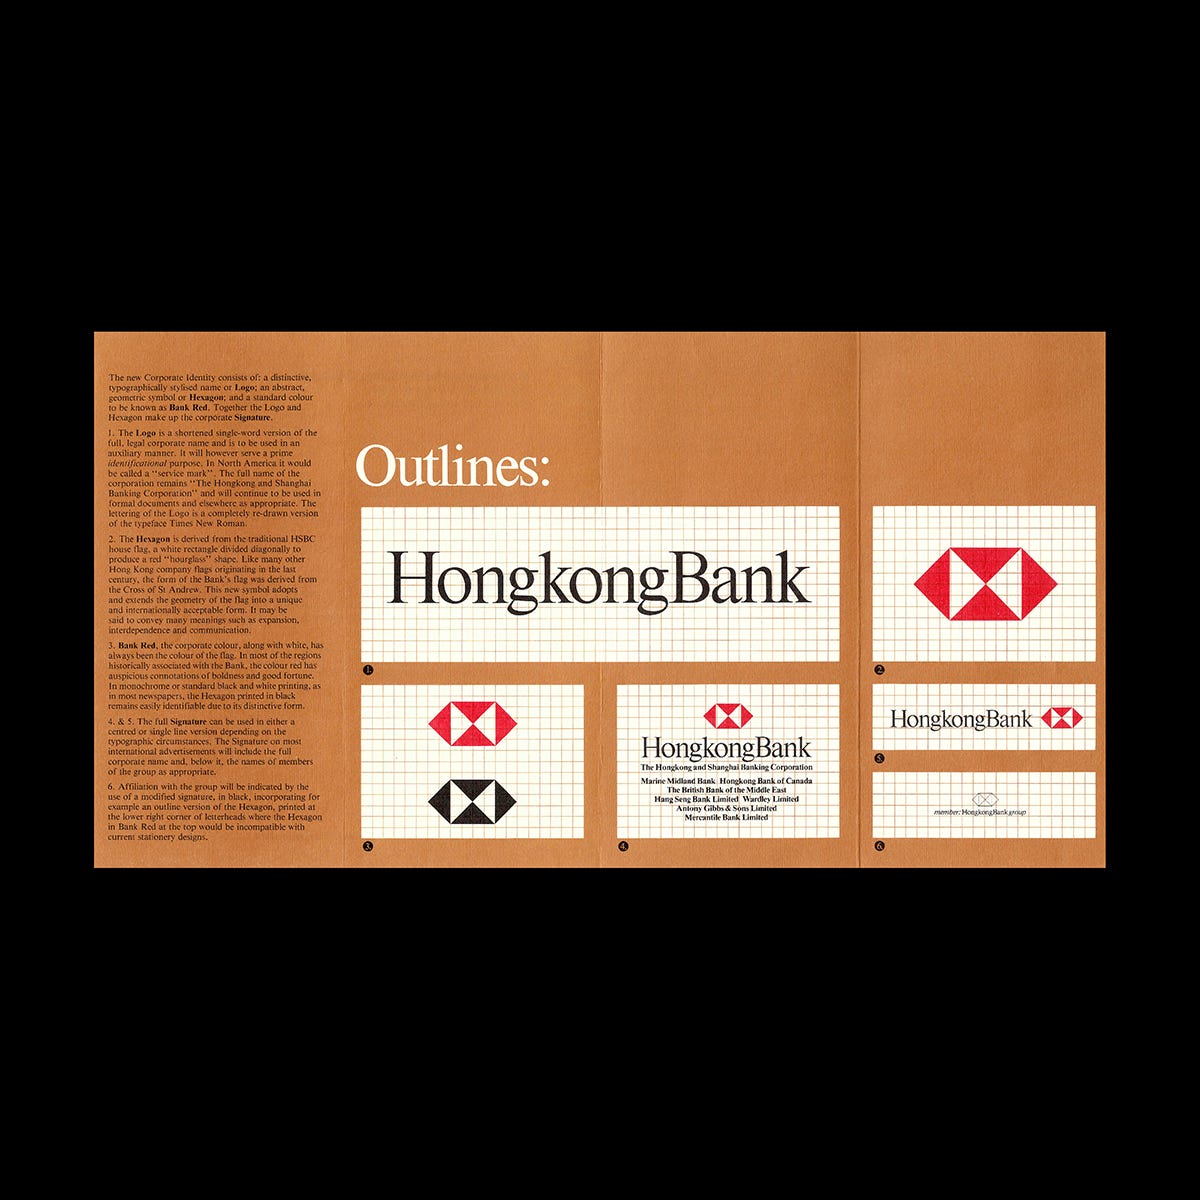 Henry Steiner's 1983 logo for the HongKongBank